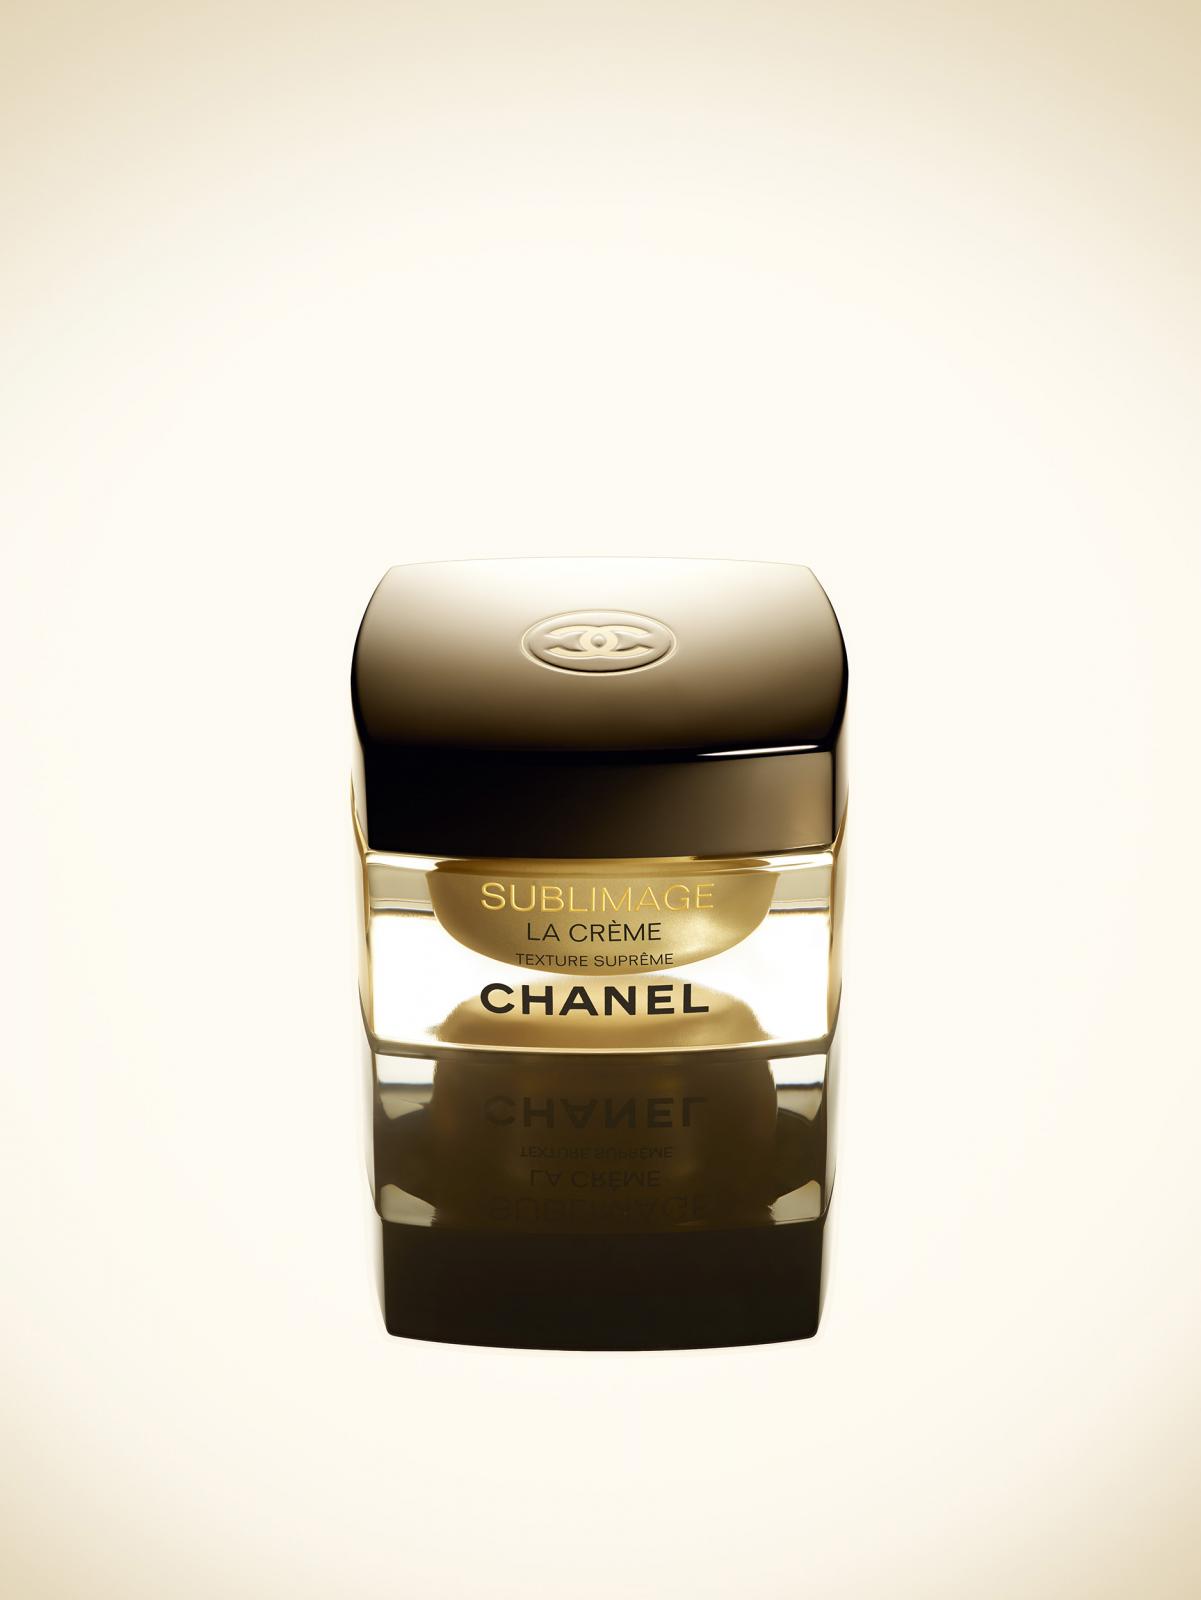 Chanel / Sublimage Mini / Guido Mocafico